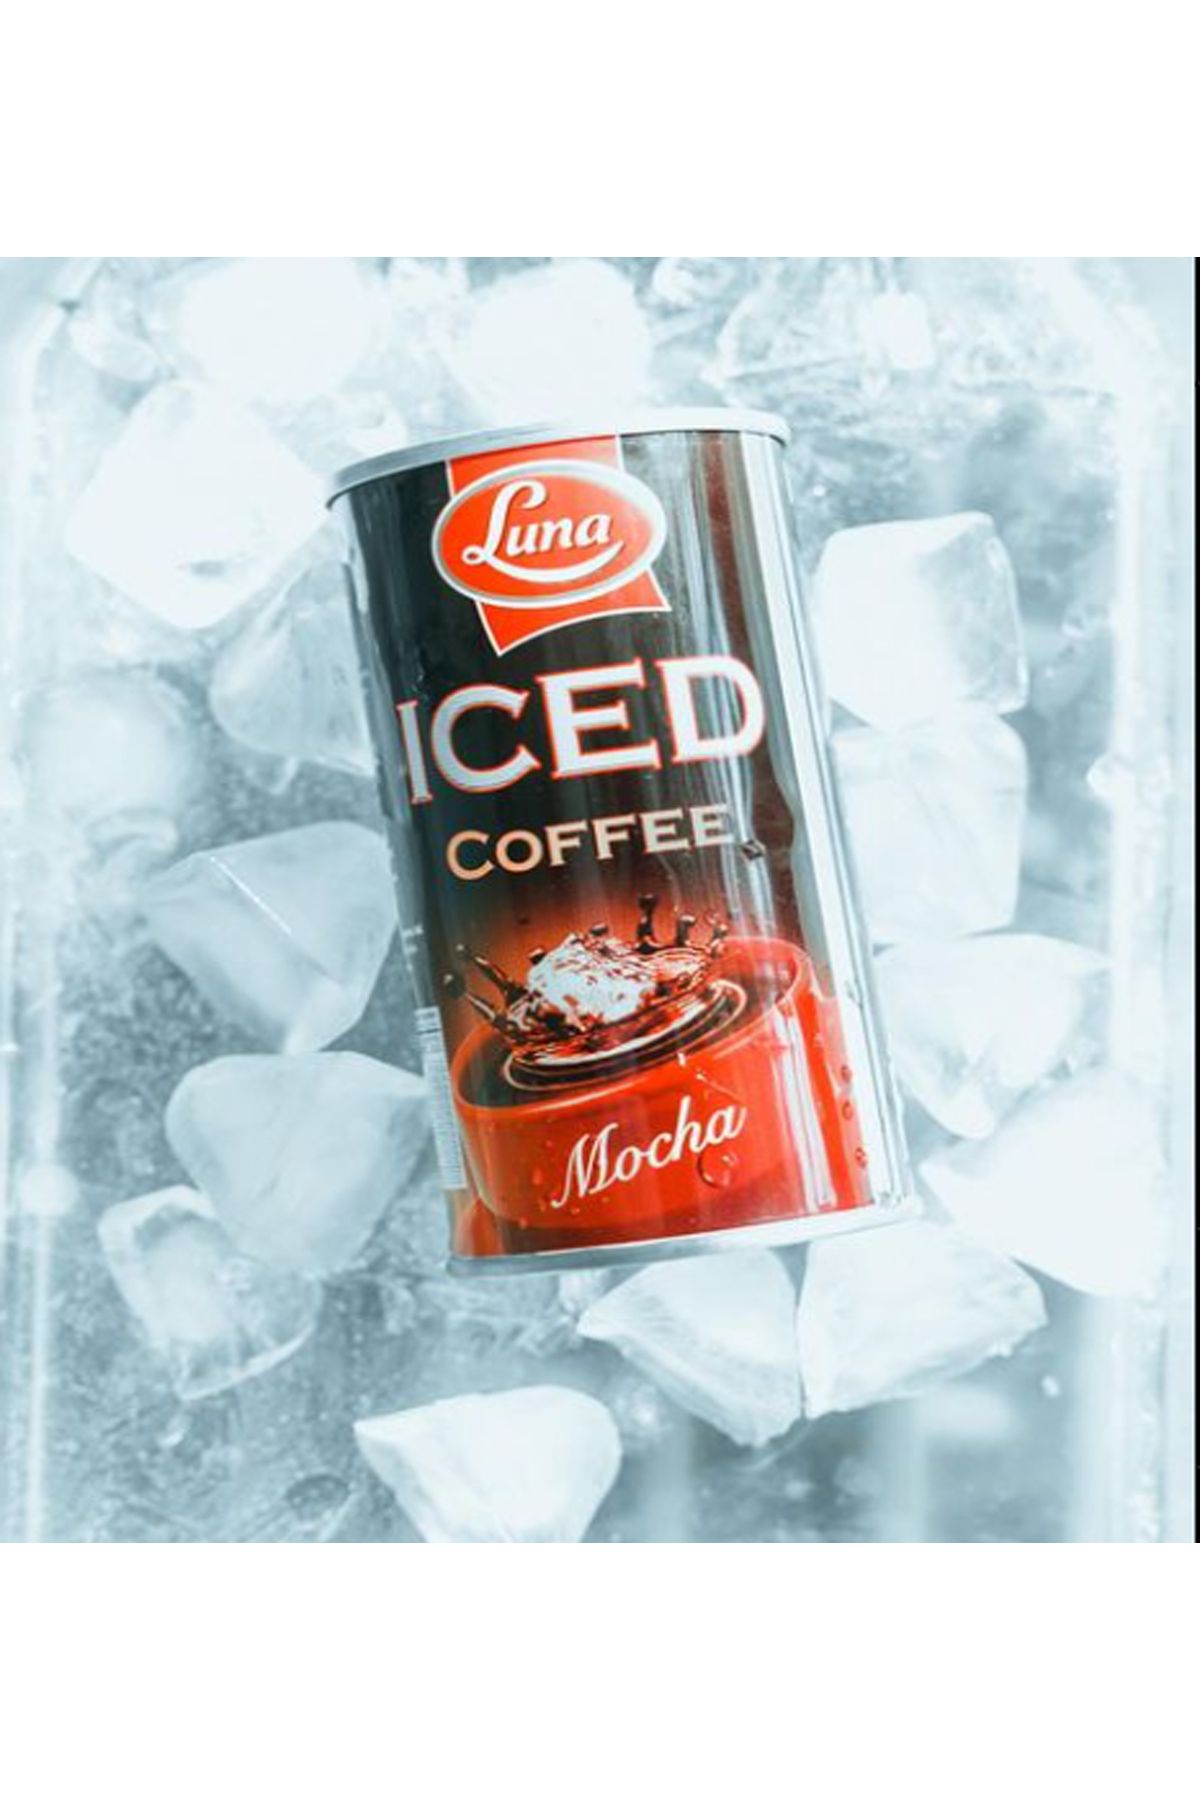 Luna Iced Coffee Mocha 195 GR